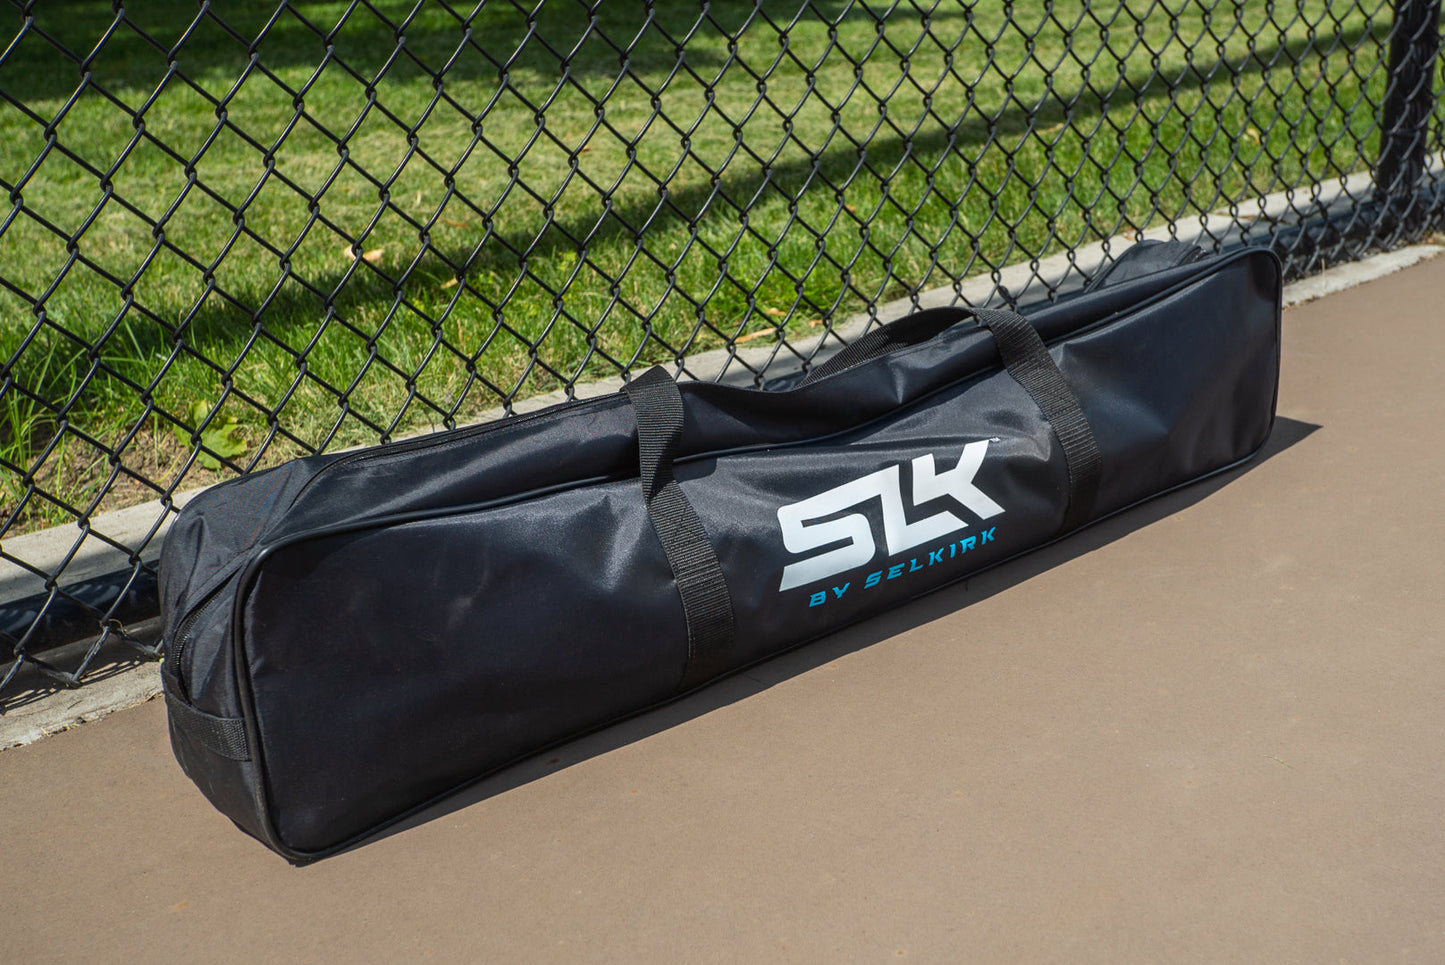 SLK Pro Portable Net by Selkirk Sport